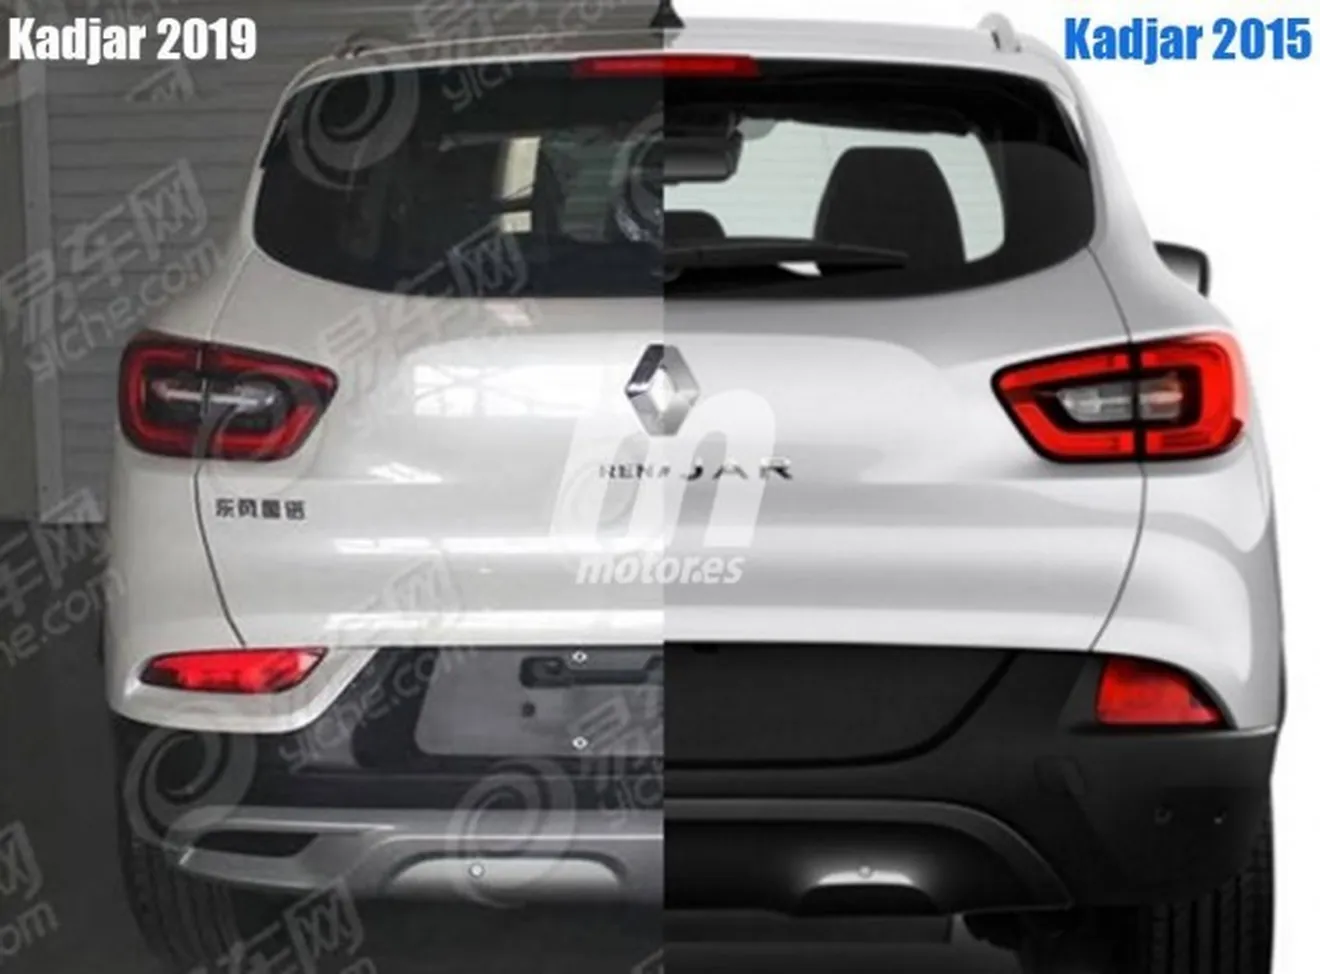 Renault Kadjar 2019 - foto espía